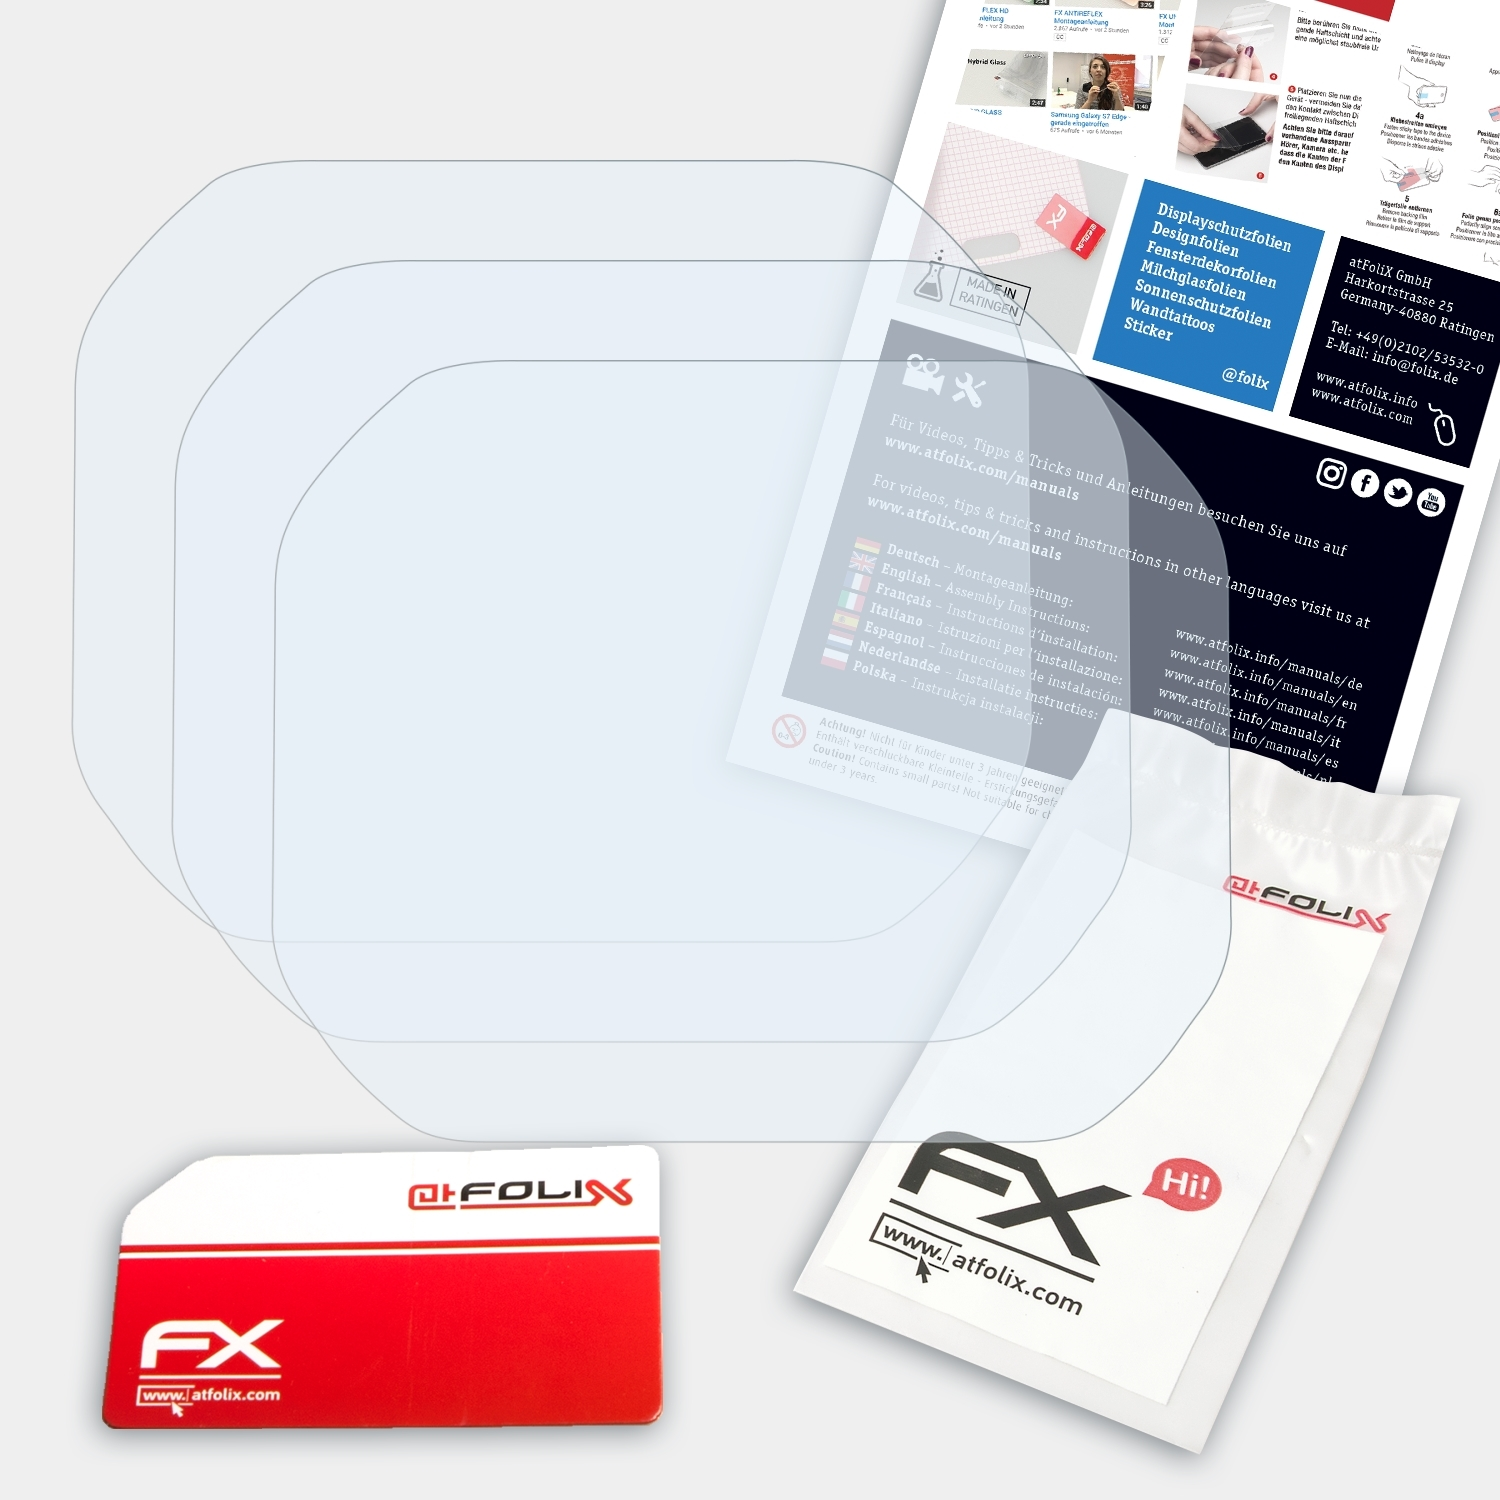 ATFOLIX 3x FX-Clear Displayschutz(für Casio GM-5600SN-1ER)